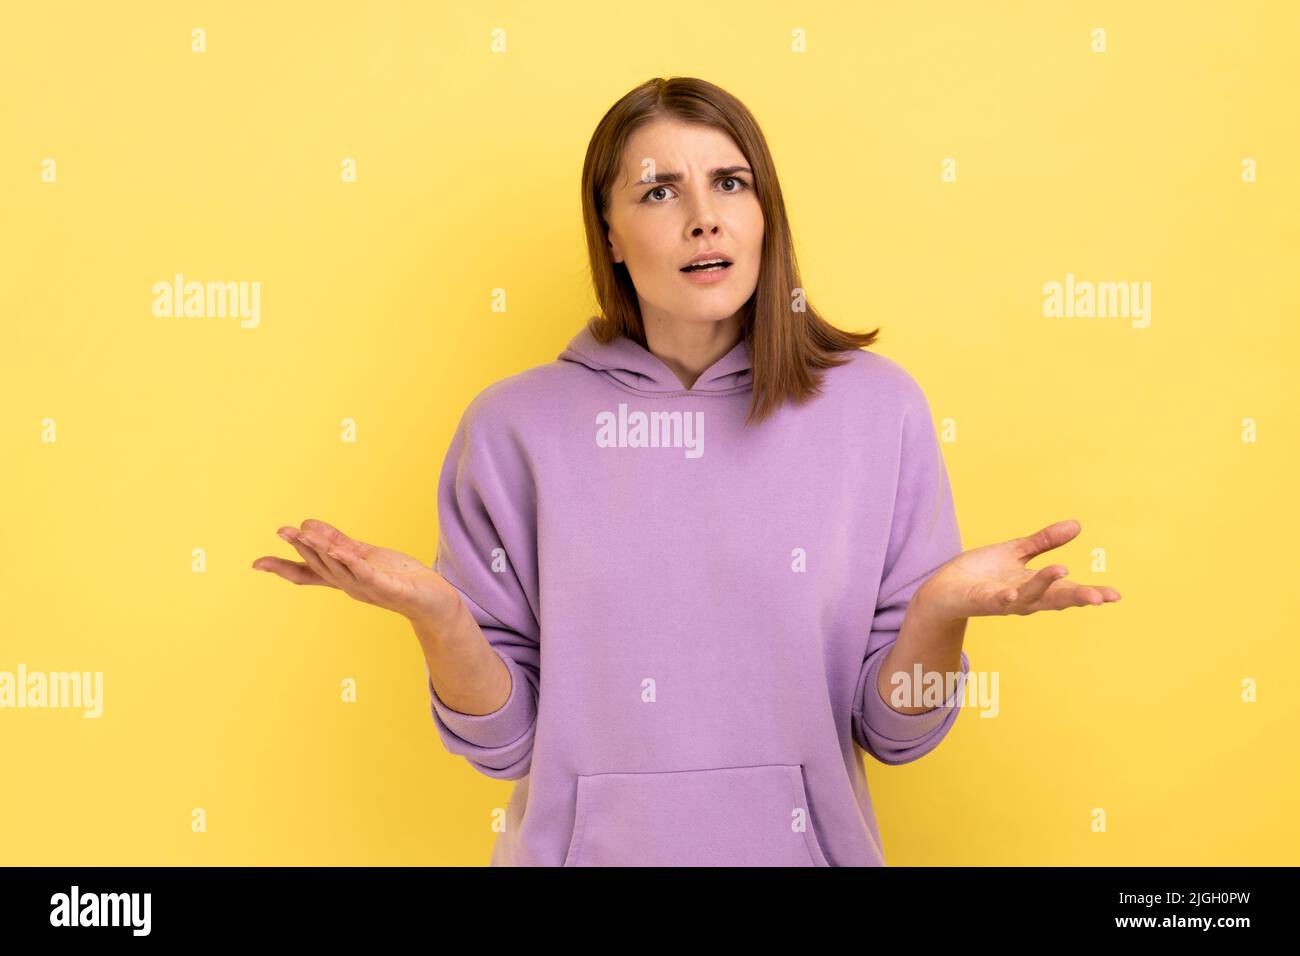 Porträt einer unglücklich gestressten jungen erwachsenen Frau, die mit erhobenem Arm steht und fragt, negative Emotionen ausdrückt und einen violetten Hoodie trägt. Innenaufnahme des Studios isoliert auf gelbem Hintergrund. Stockfoto